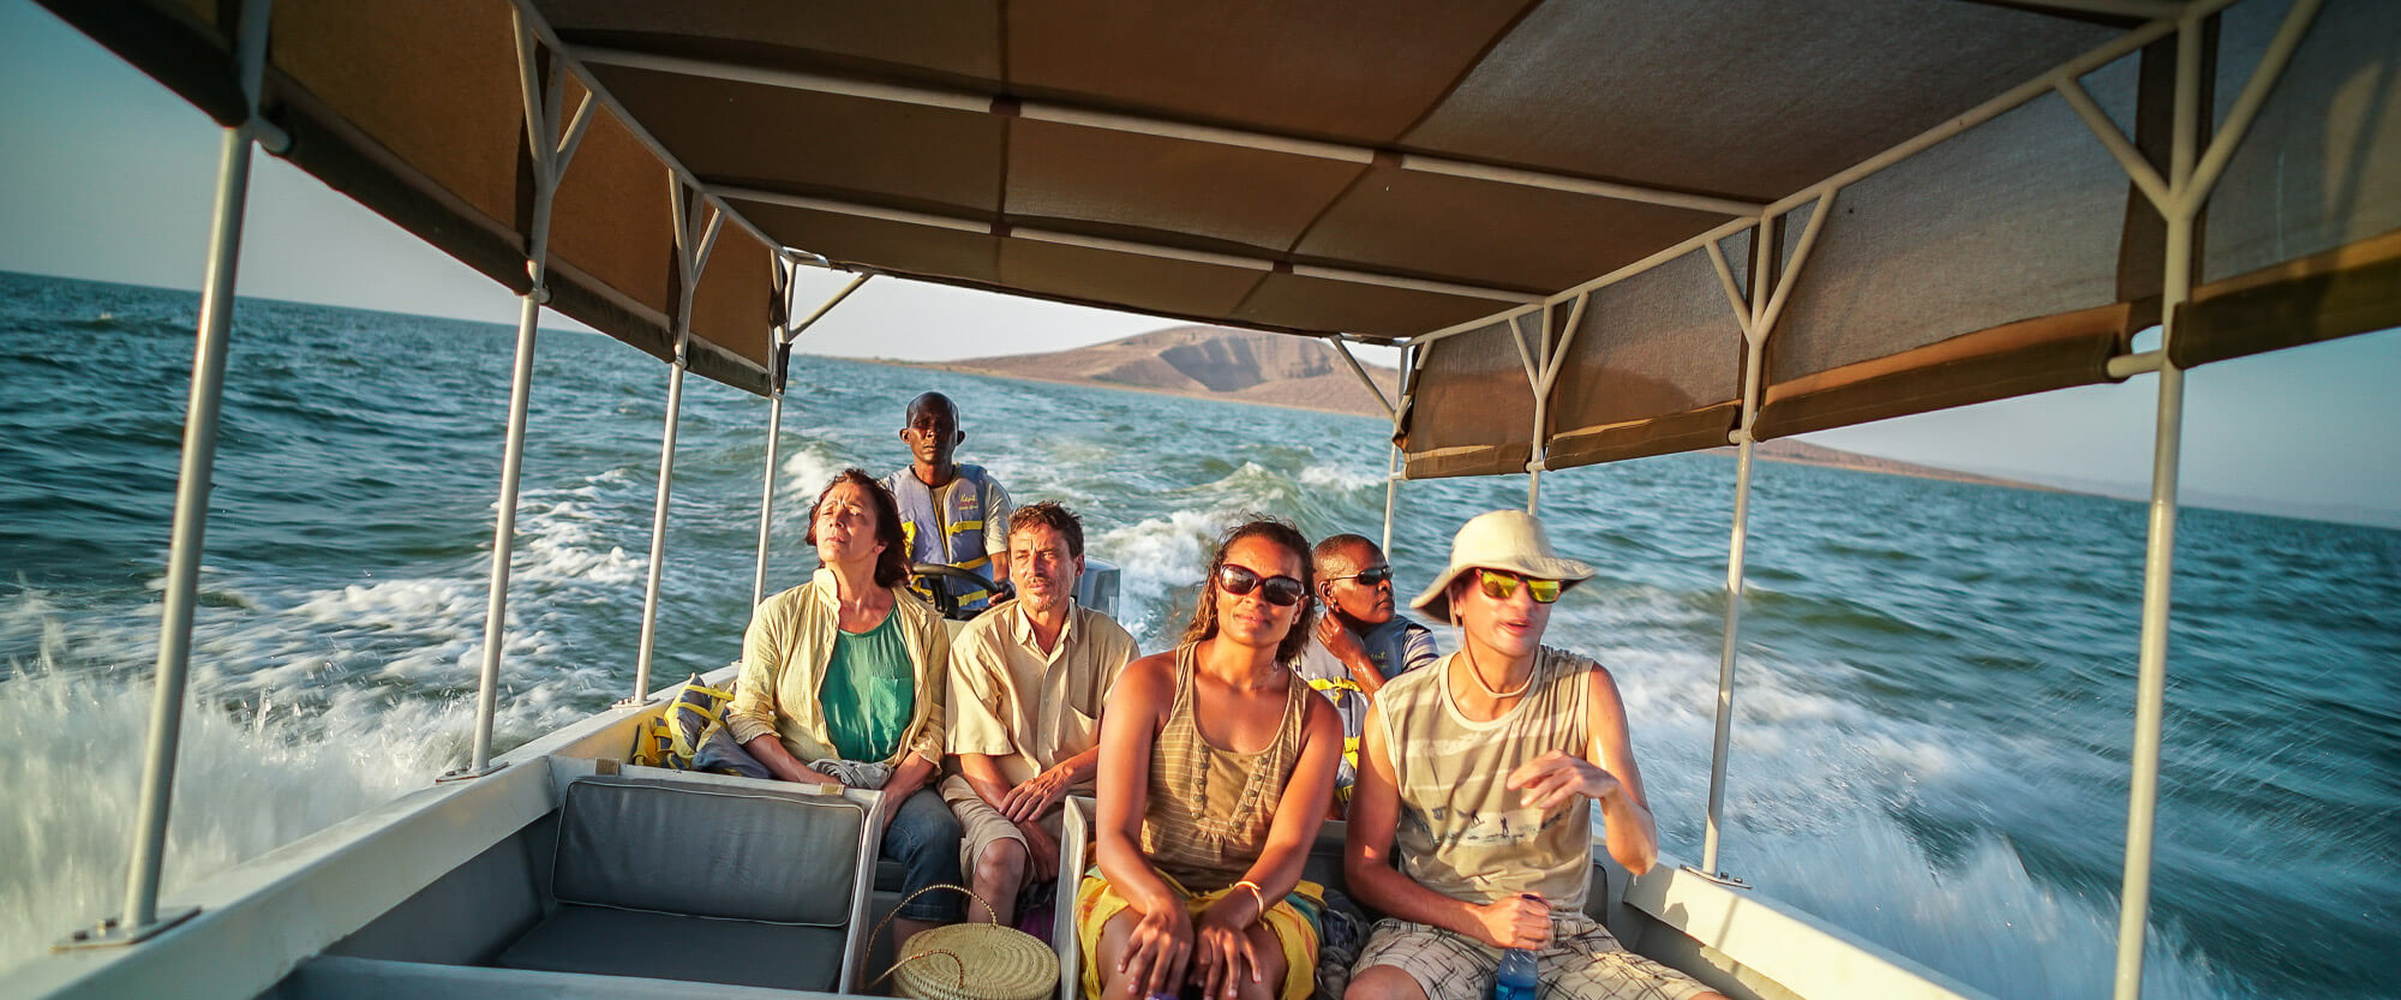 Boat safaris